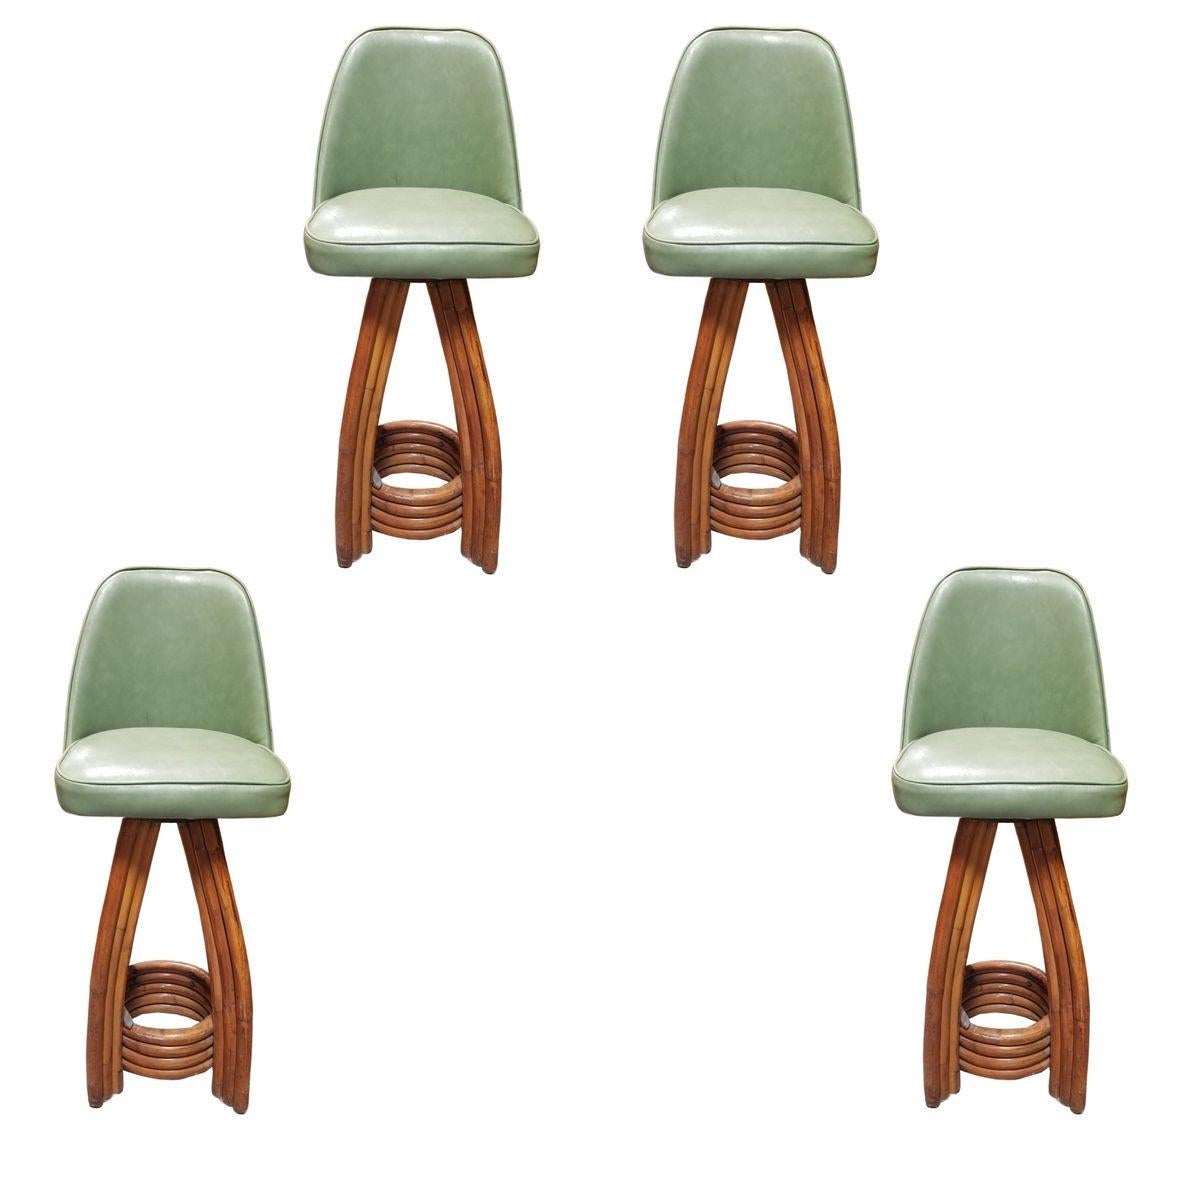 paul frank stools